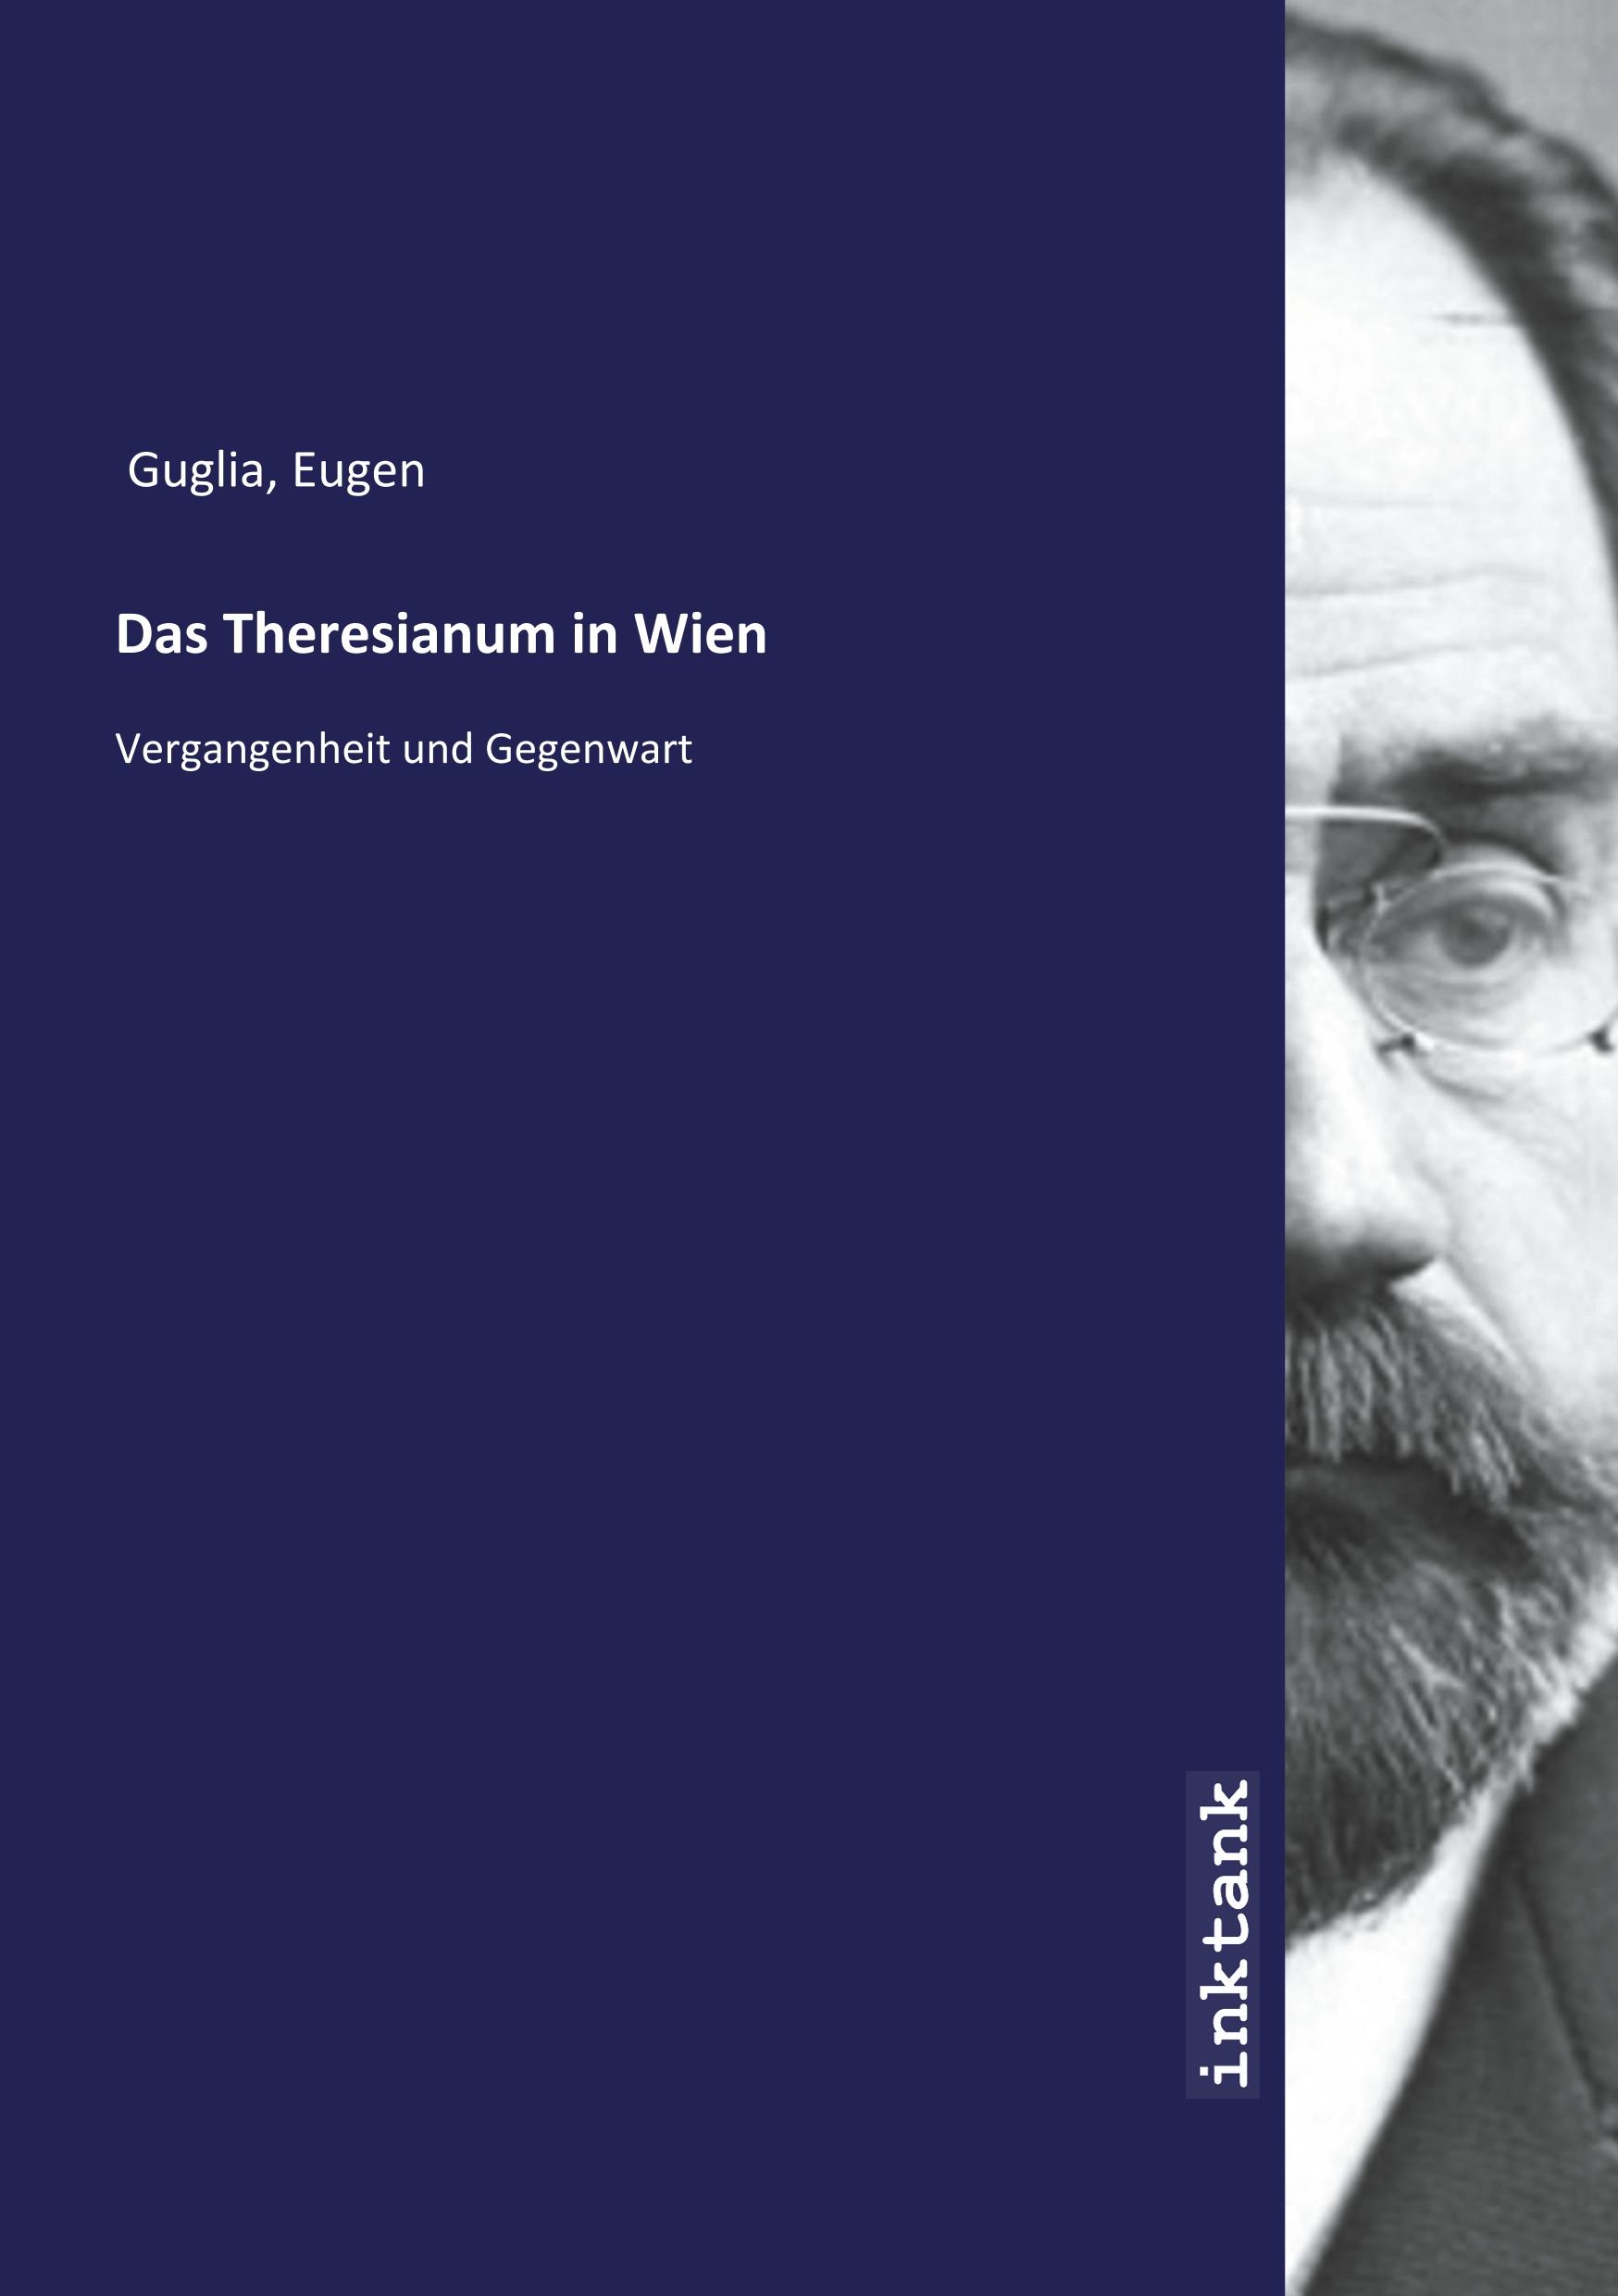 Das Theresianum in Wien - Guglia, Eugen